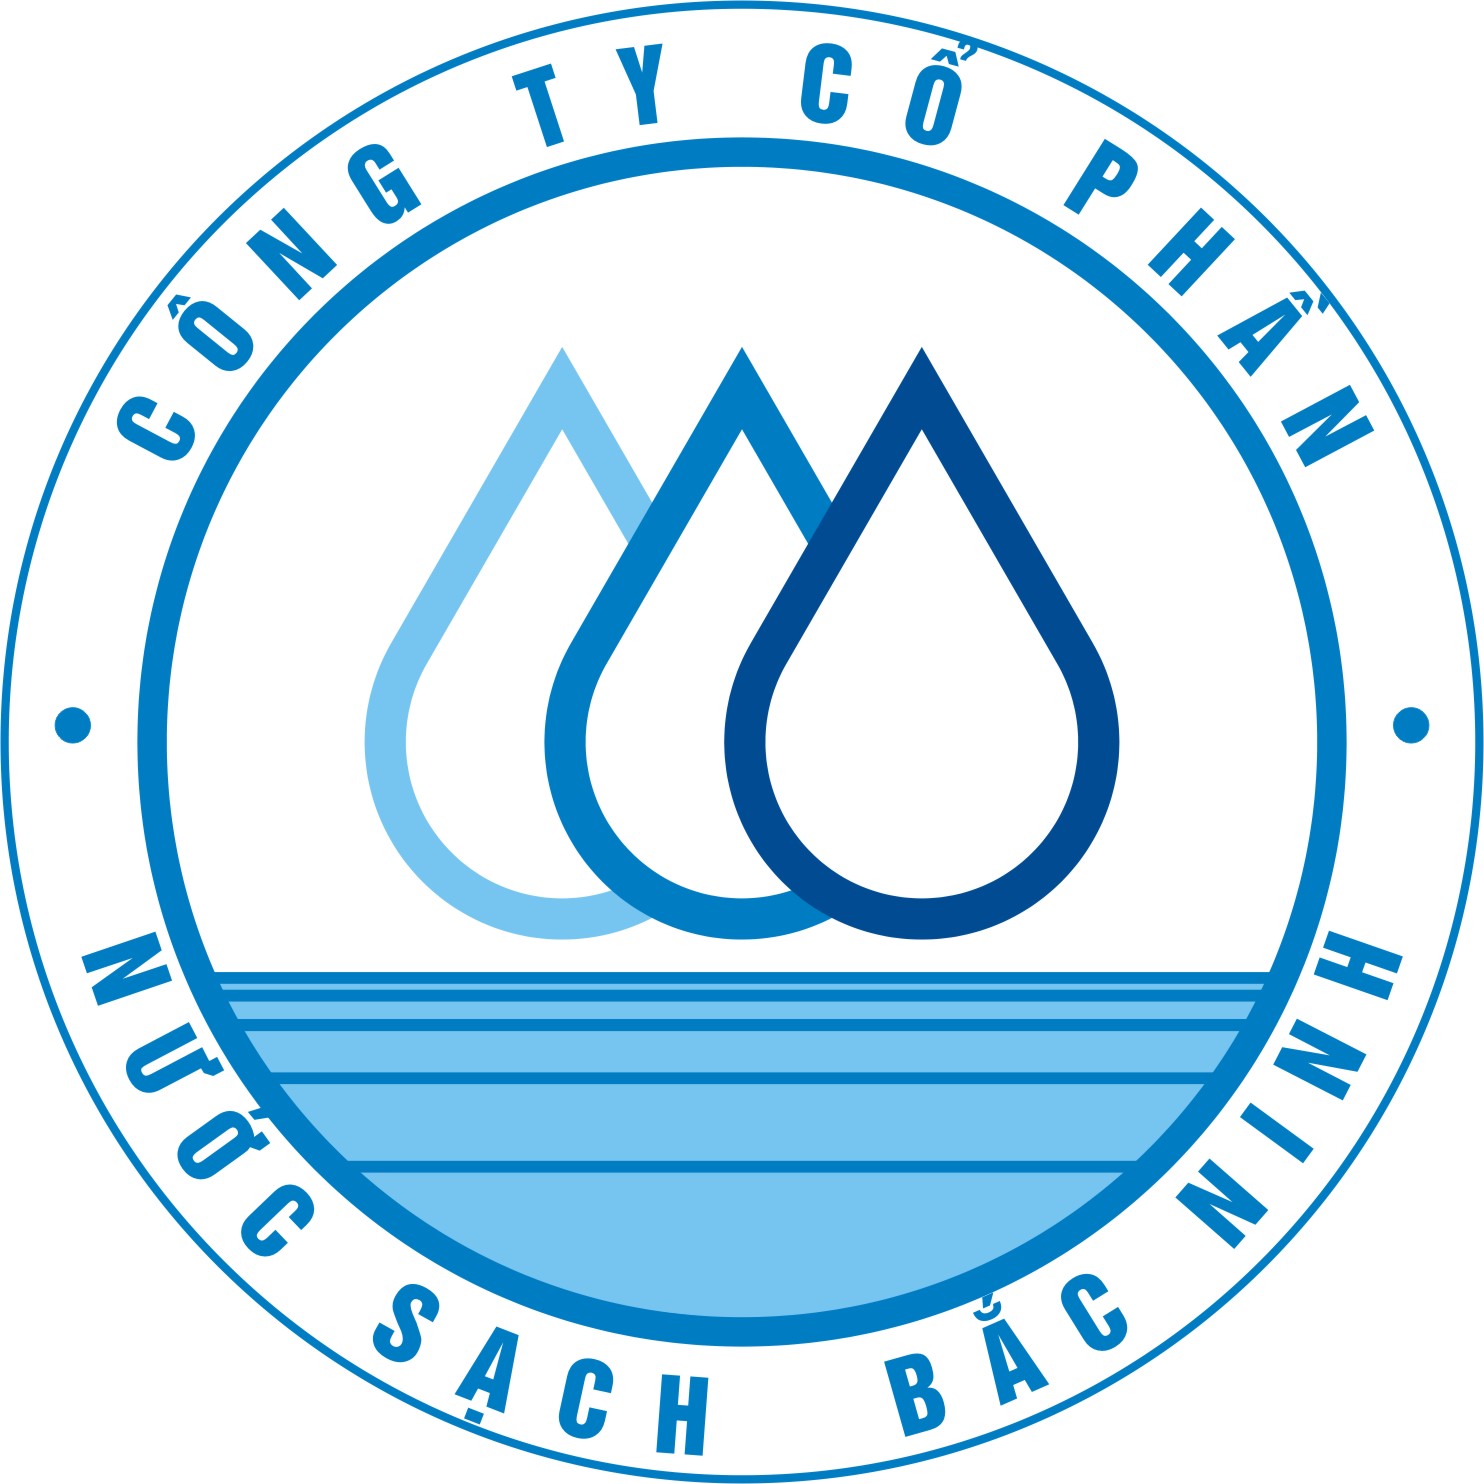 Gia hạn thời gian công bố BCTC bán niên năm 2017 của Công ty cổ phần nước sạch Bắc Ninh